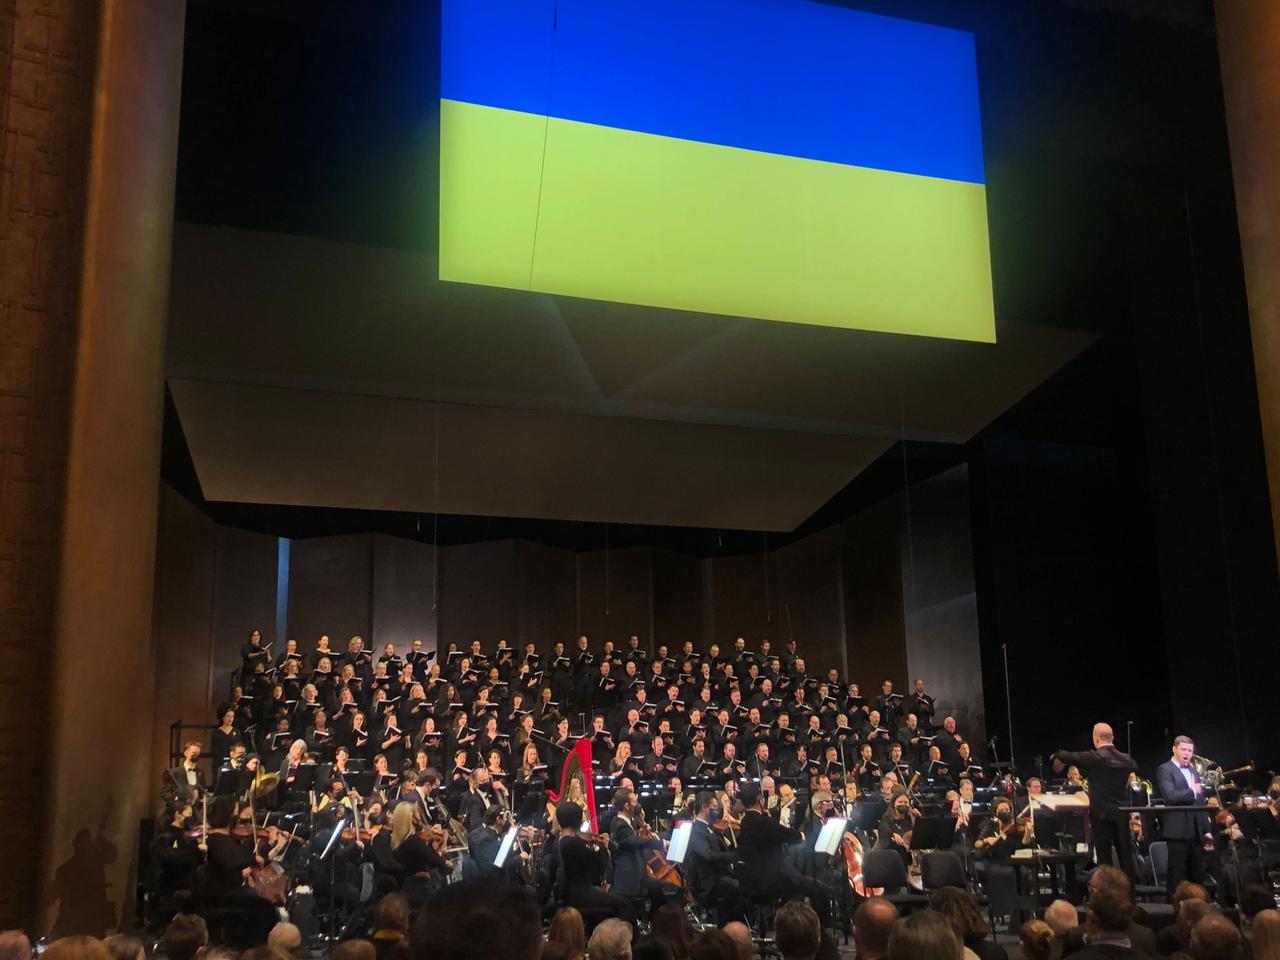 Der Blick auf die Bühne zeigt den großen, aufgestellten Chor, der unter einer ukrainischen Flagge singt.